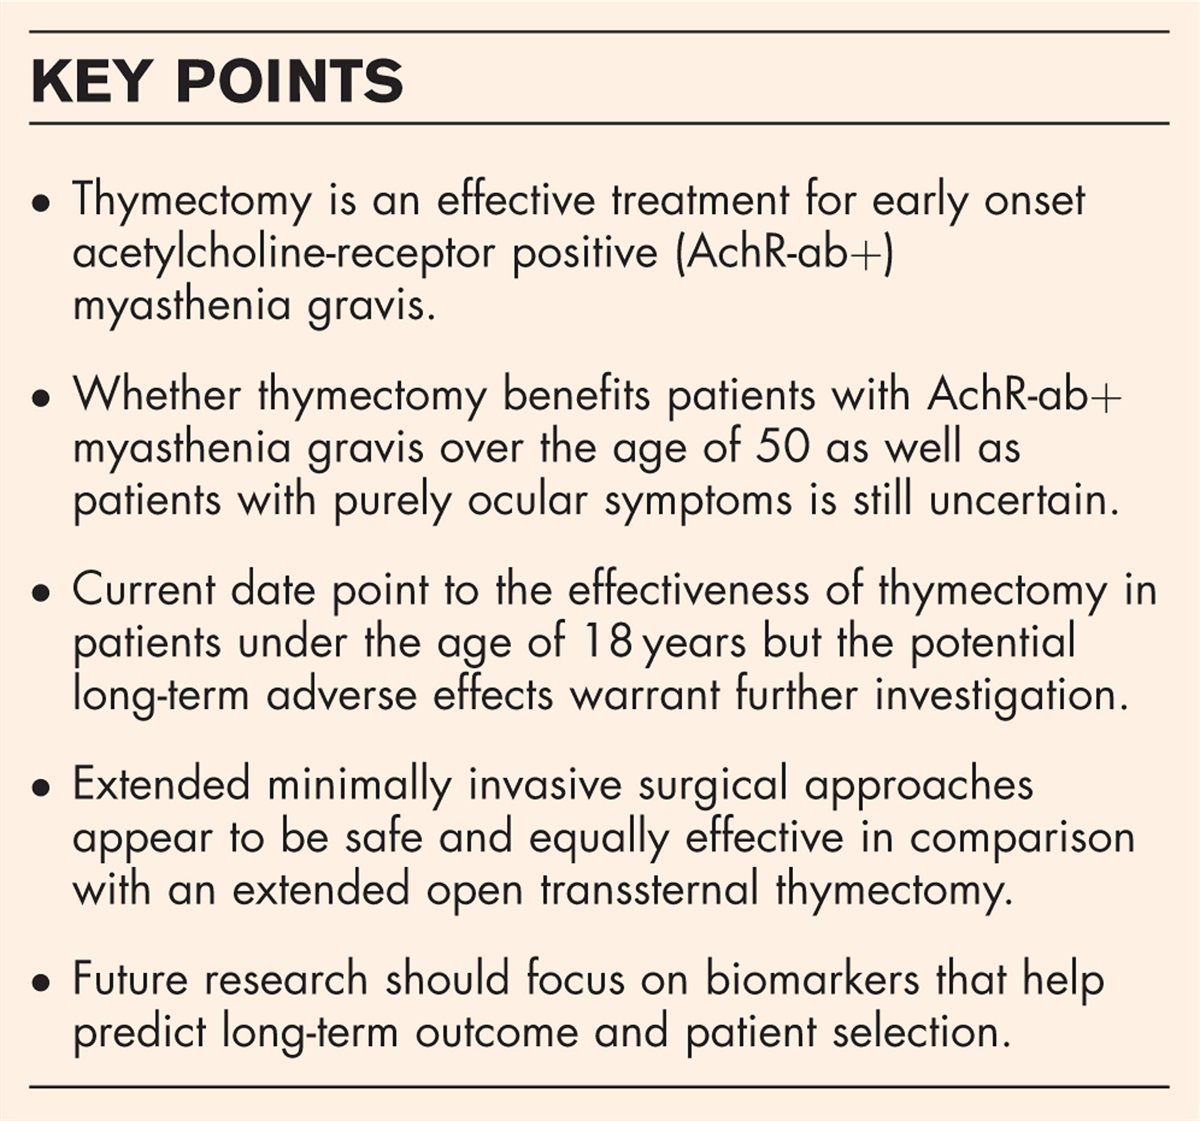 Thymectomy in myasthenia gravis